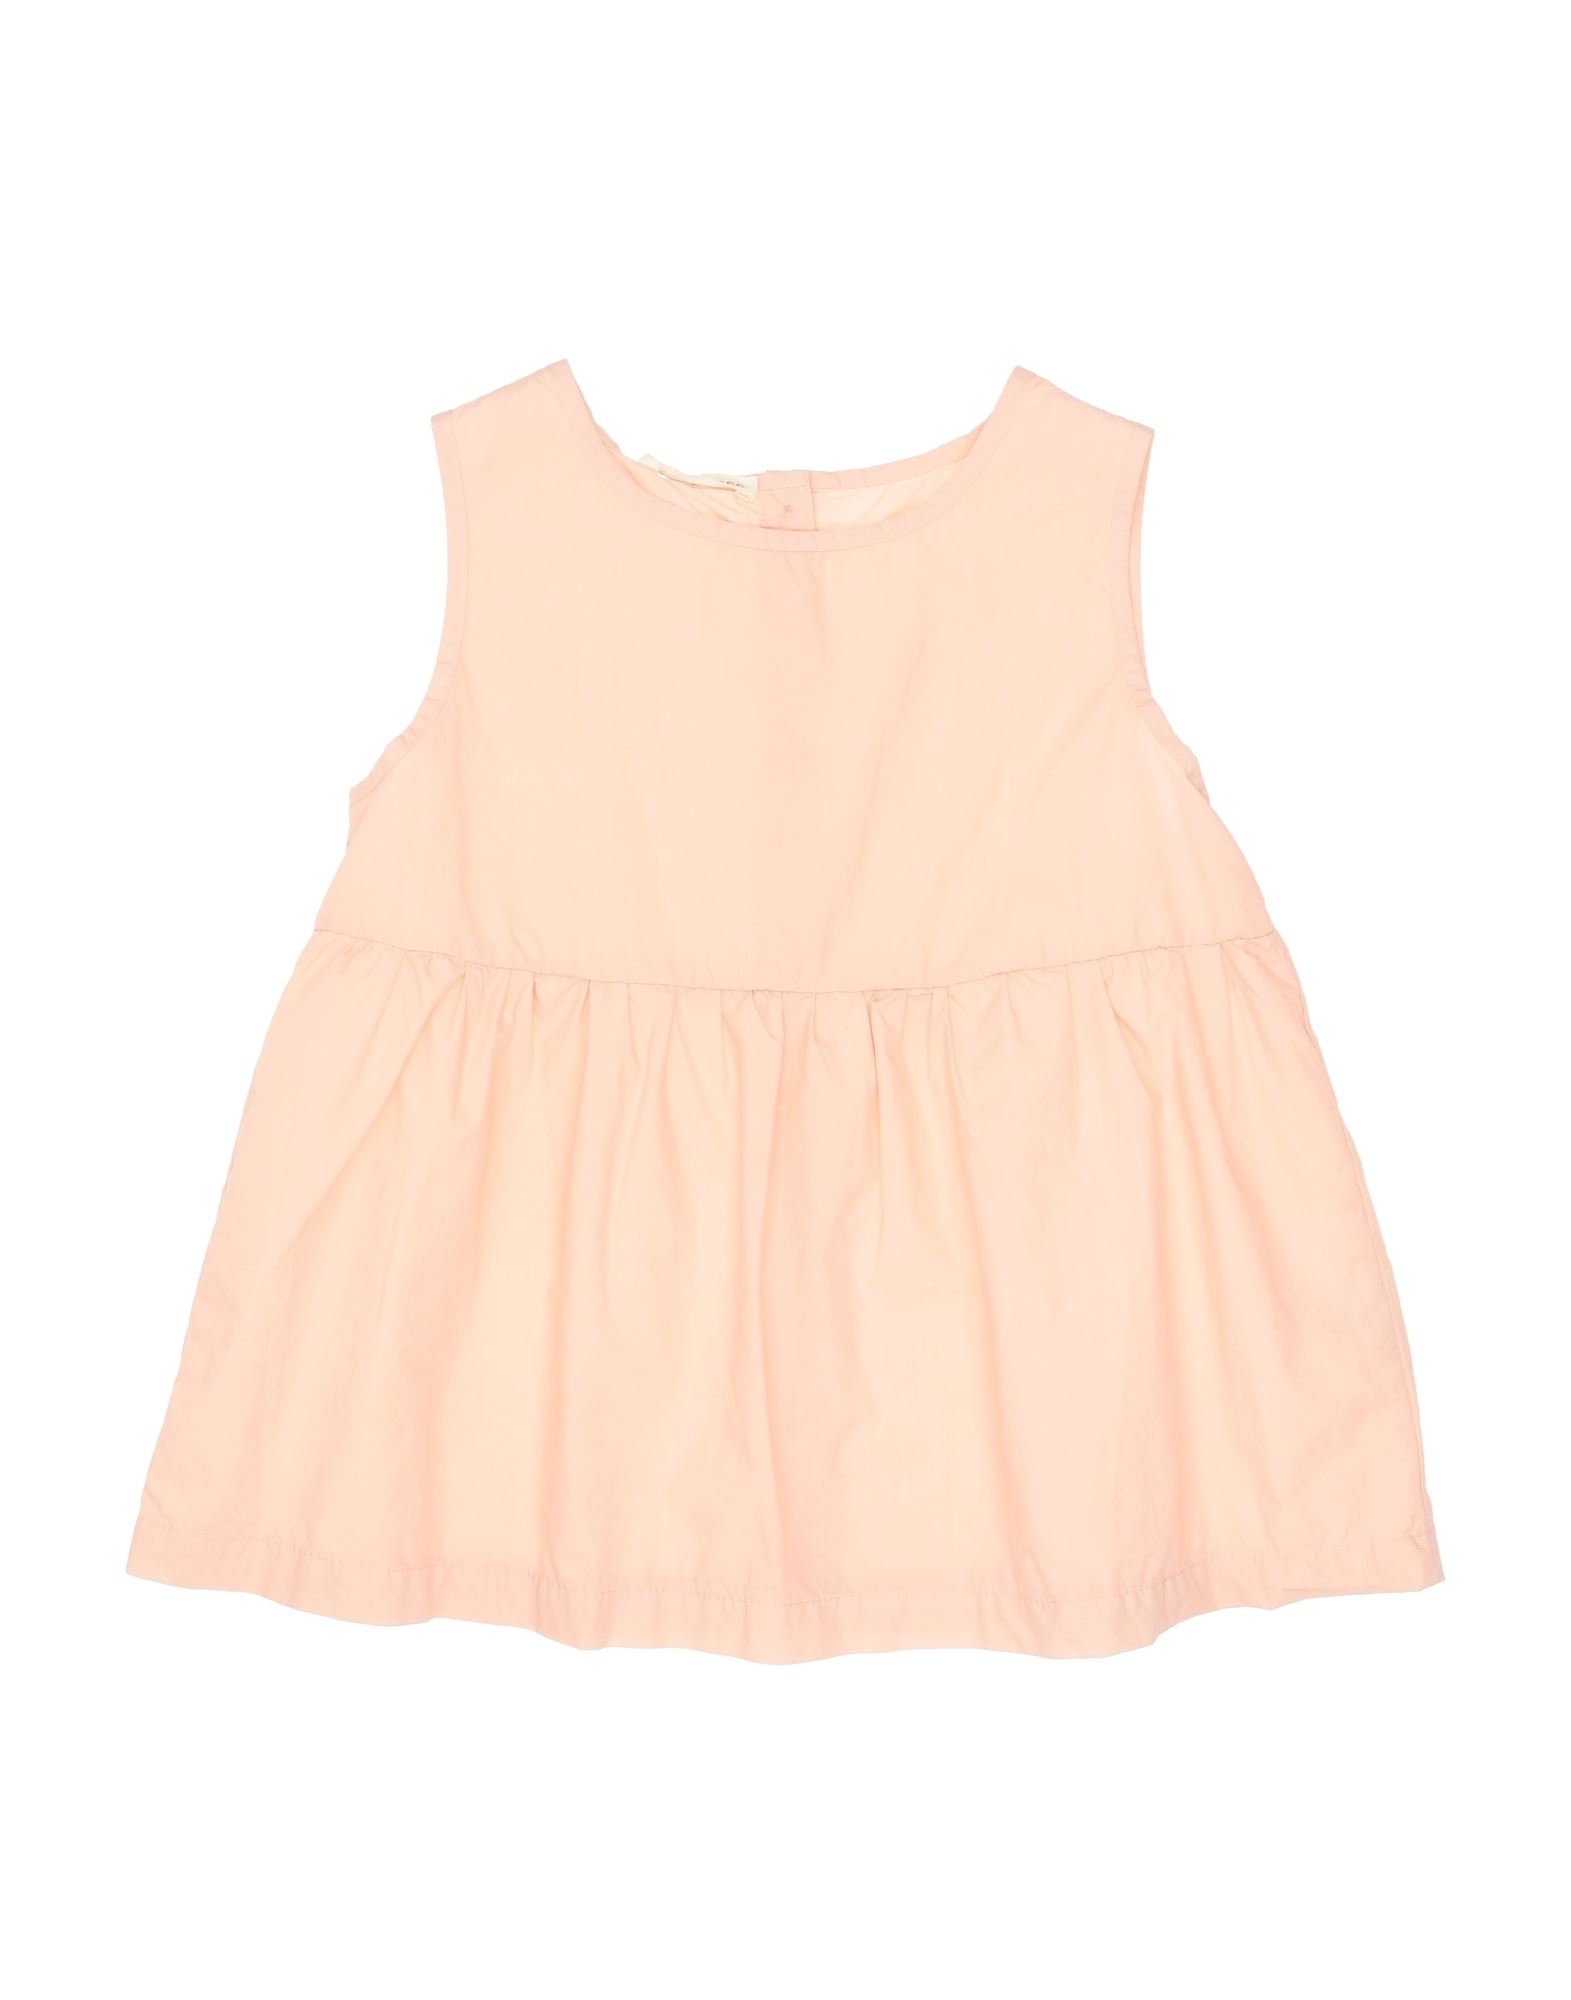 Babe And Tess Kids' Babe & Tess Toddler Girl T-shirt Pink Size 6 Cotton